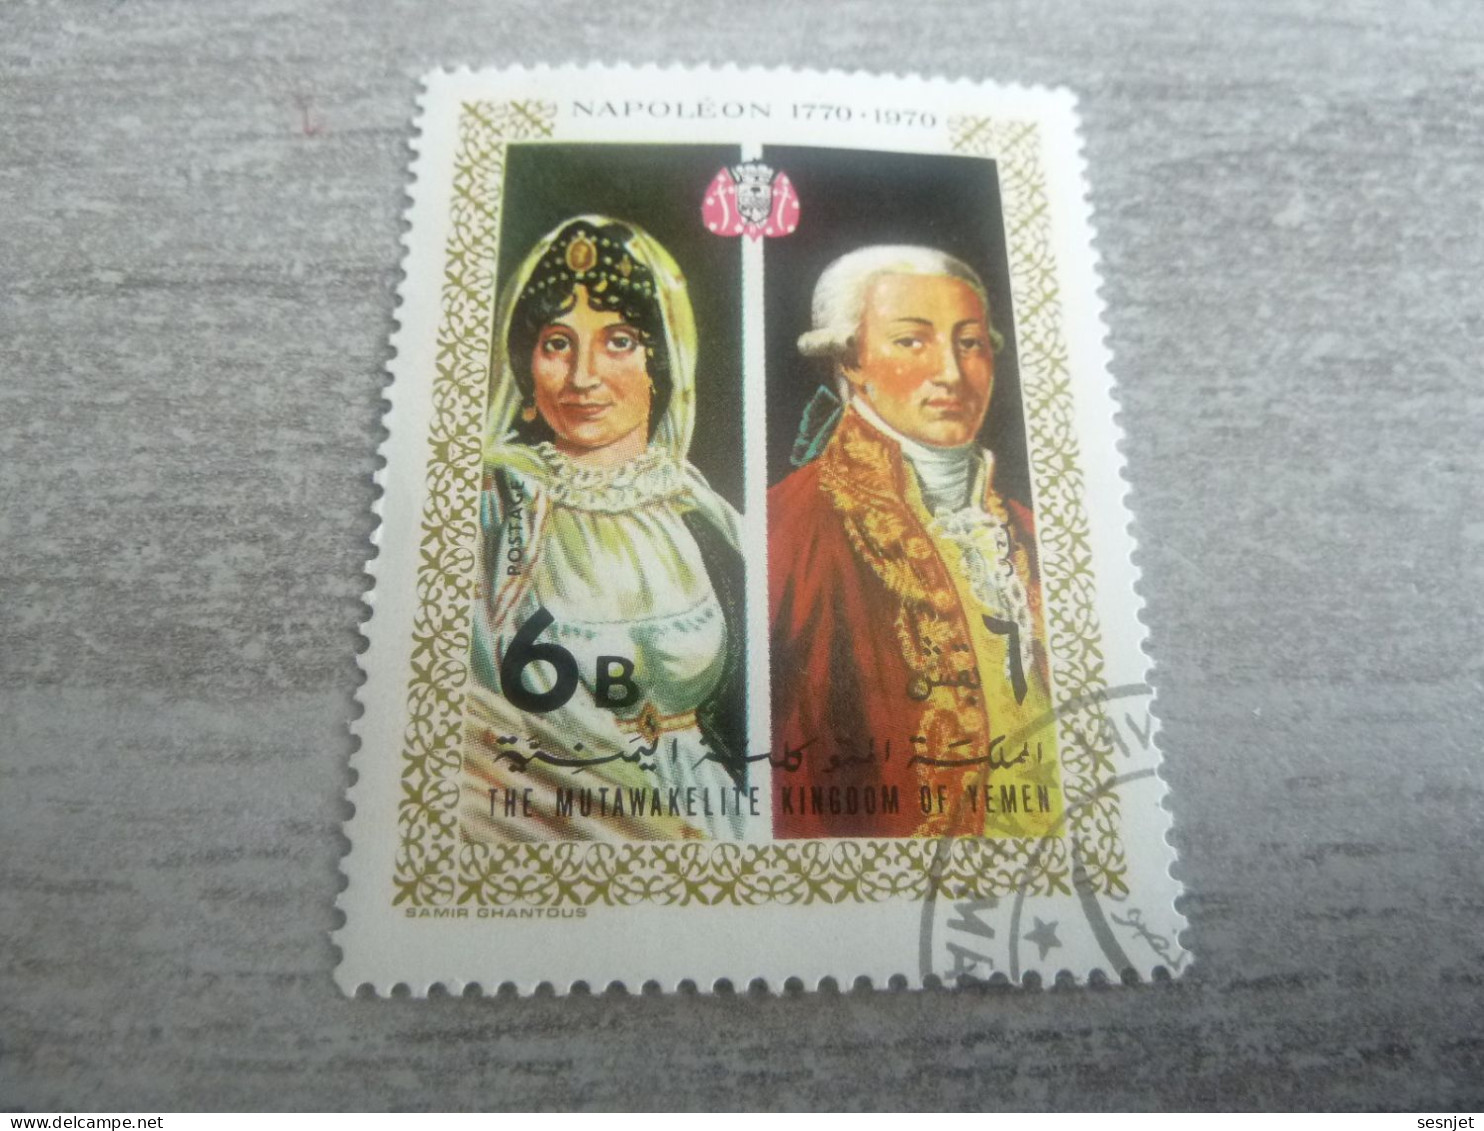 Yemen - Napoleon - The Mutawakelite - Kingdom The Yemen - 6B - Postage - Polychrome - Oblitéré - 1970 - - Napoléon